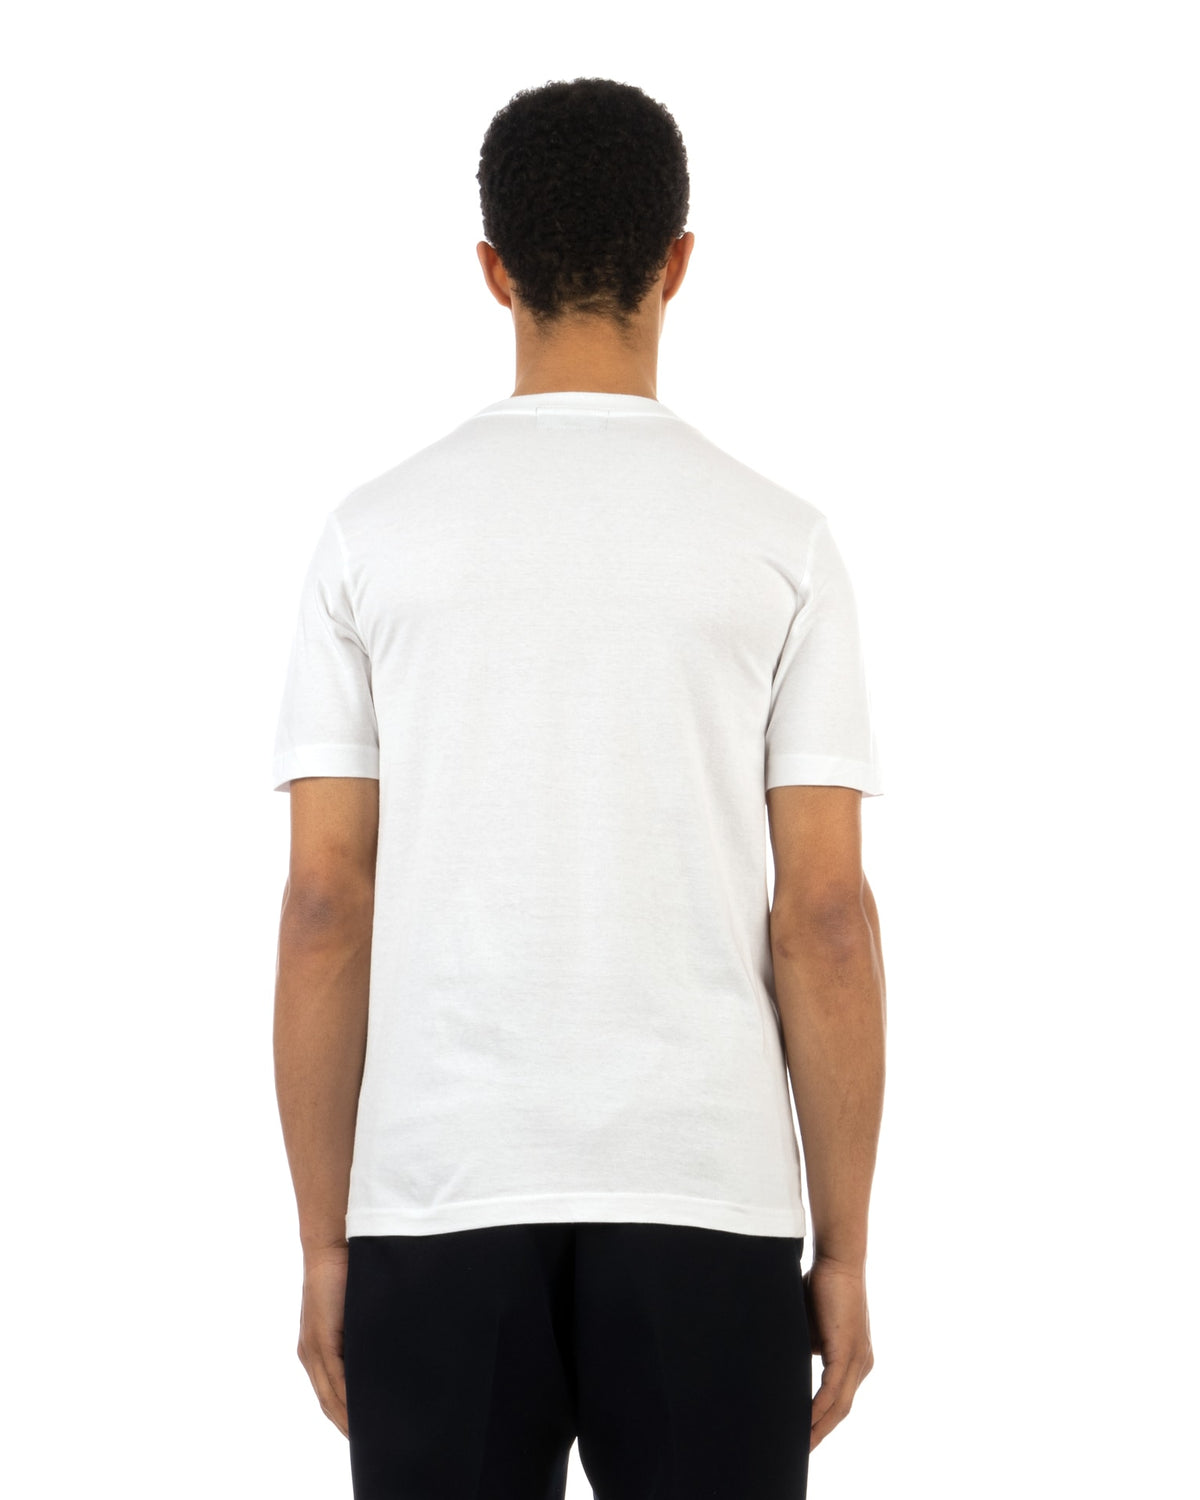 Medicom Toy | x AMPLIFIER Hide T-Shirt (design H) White - Concrete